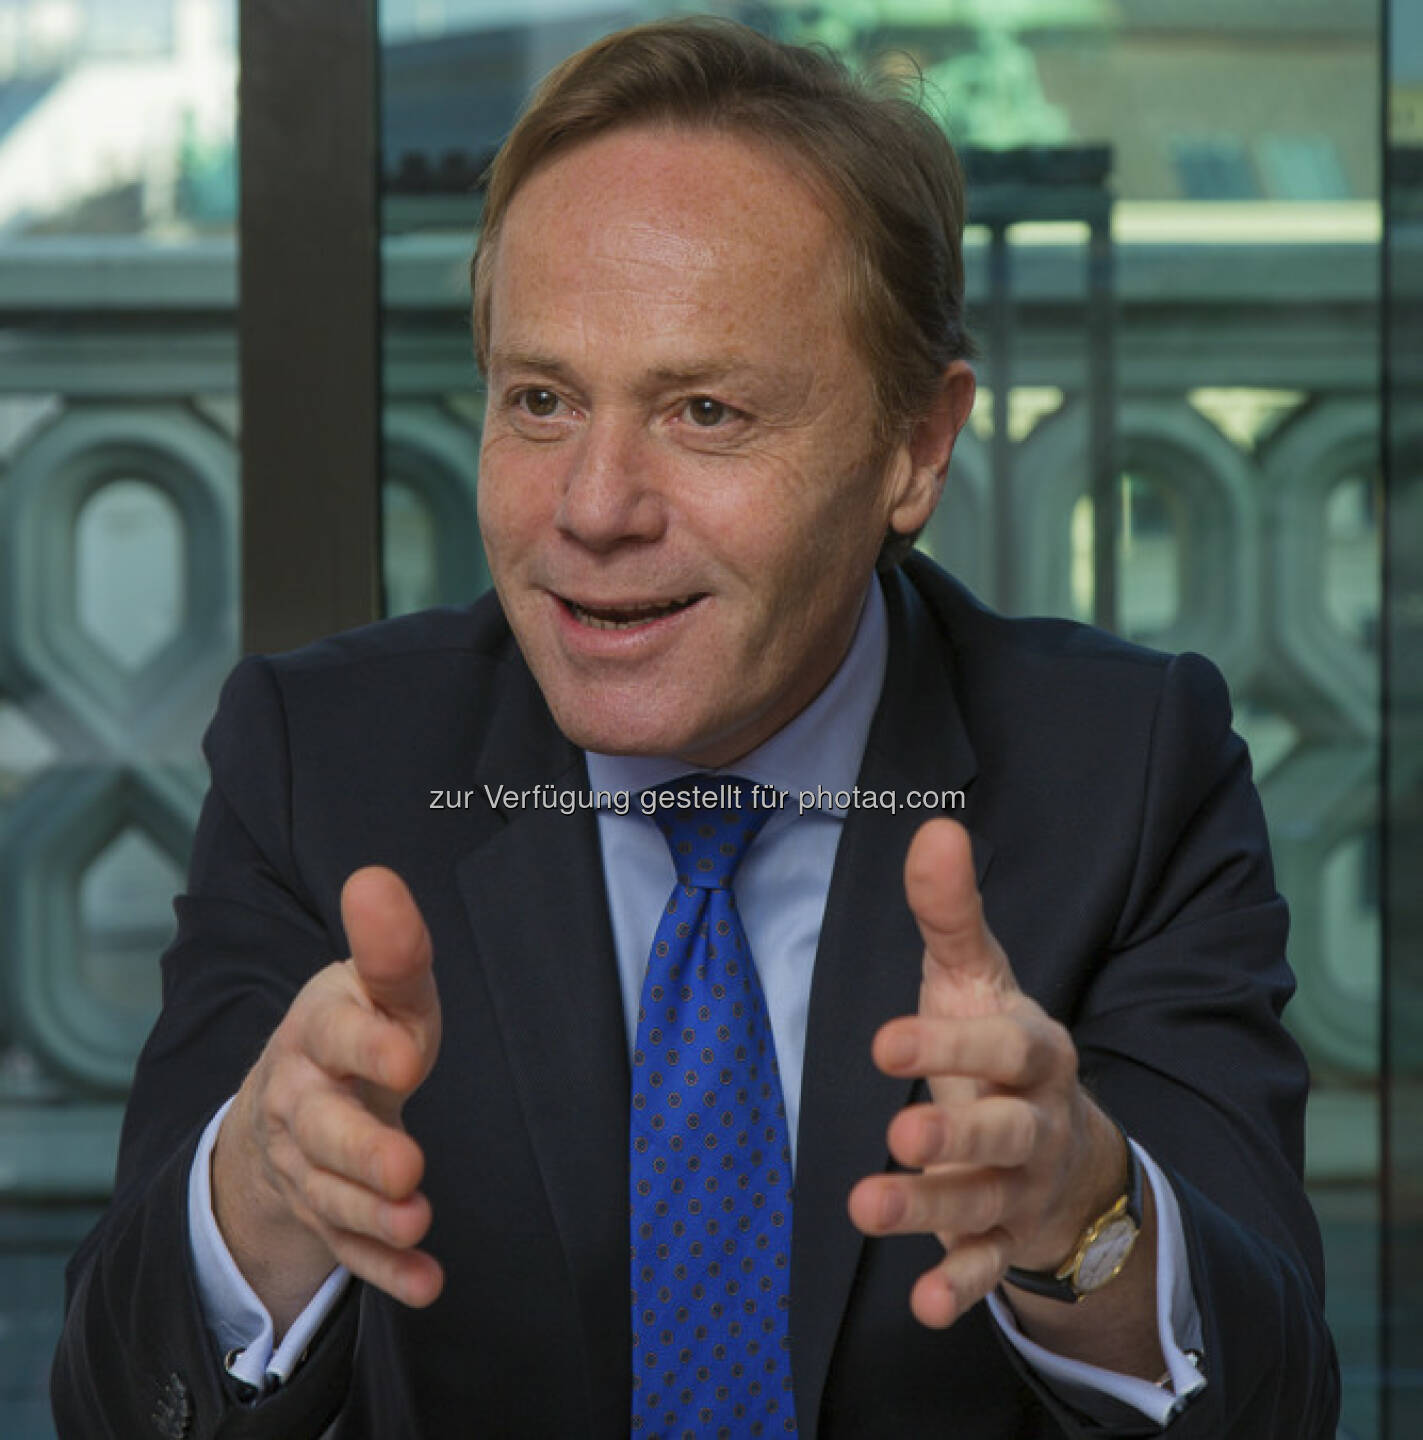 Helmut Praniess, CEO Privat Bank AG, erwartet einen Anstieg des EGT um rund 13,5 Prozent auf 9,2 Mio. EUR, sowie eine Steigerung des  Betriebsergebnisses um rund 12 Prozent auf 9,8 Mio. EUR (c) Aussendung